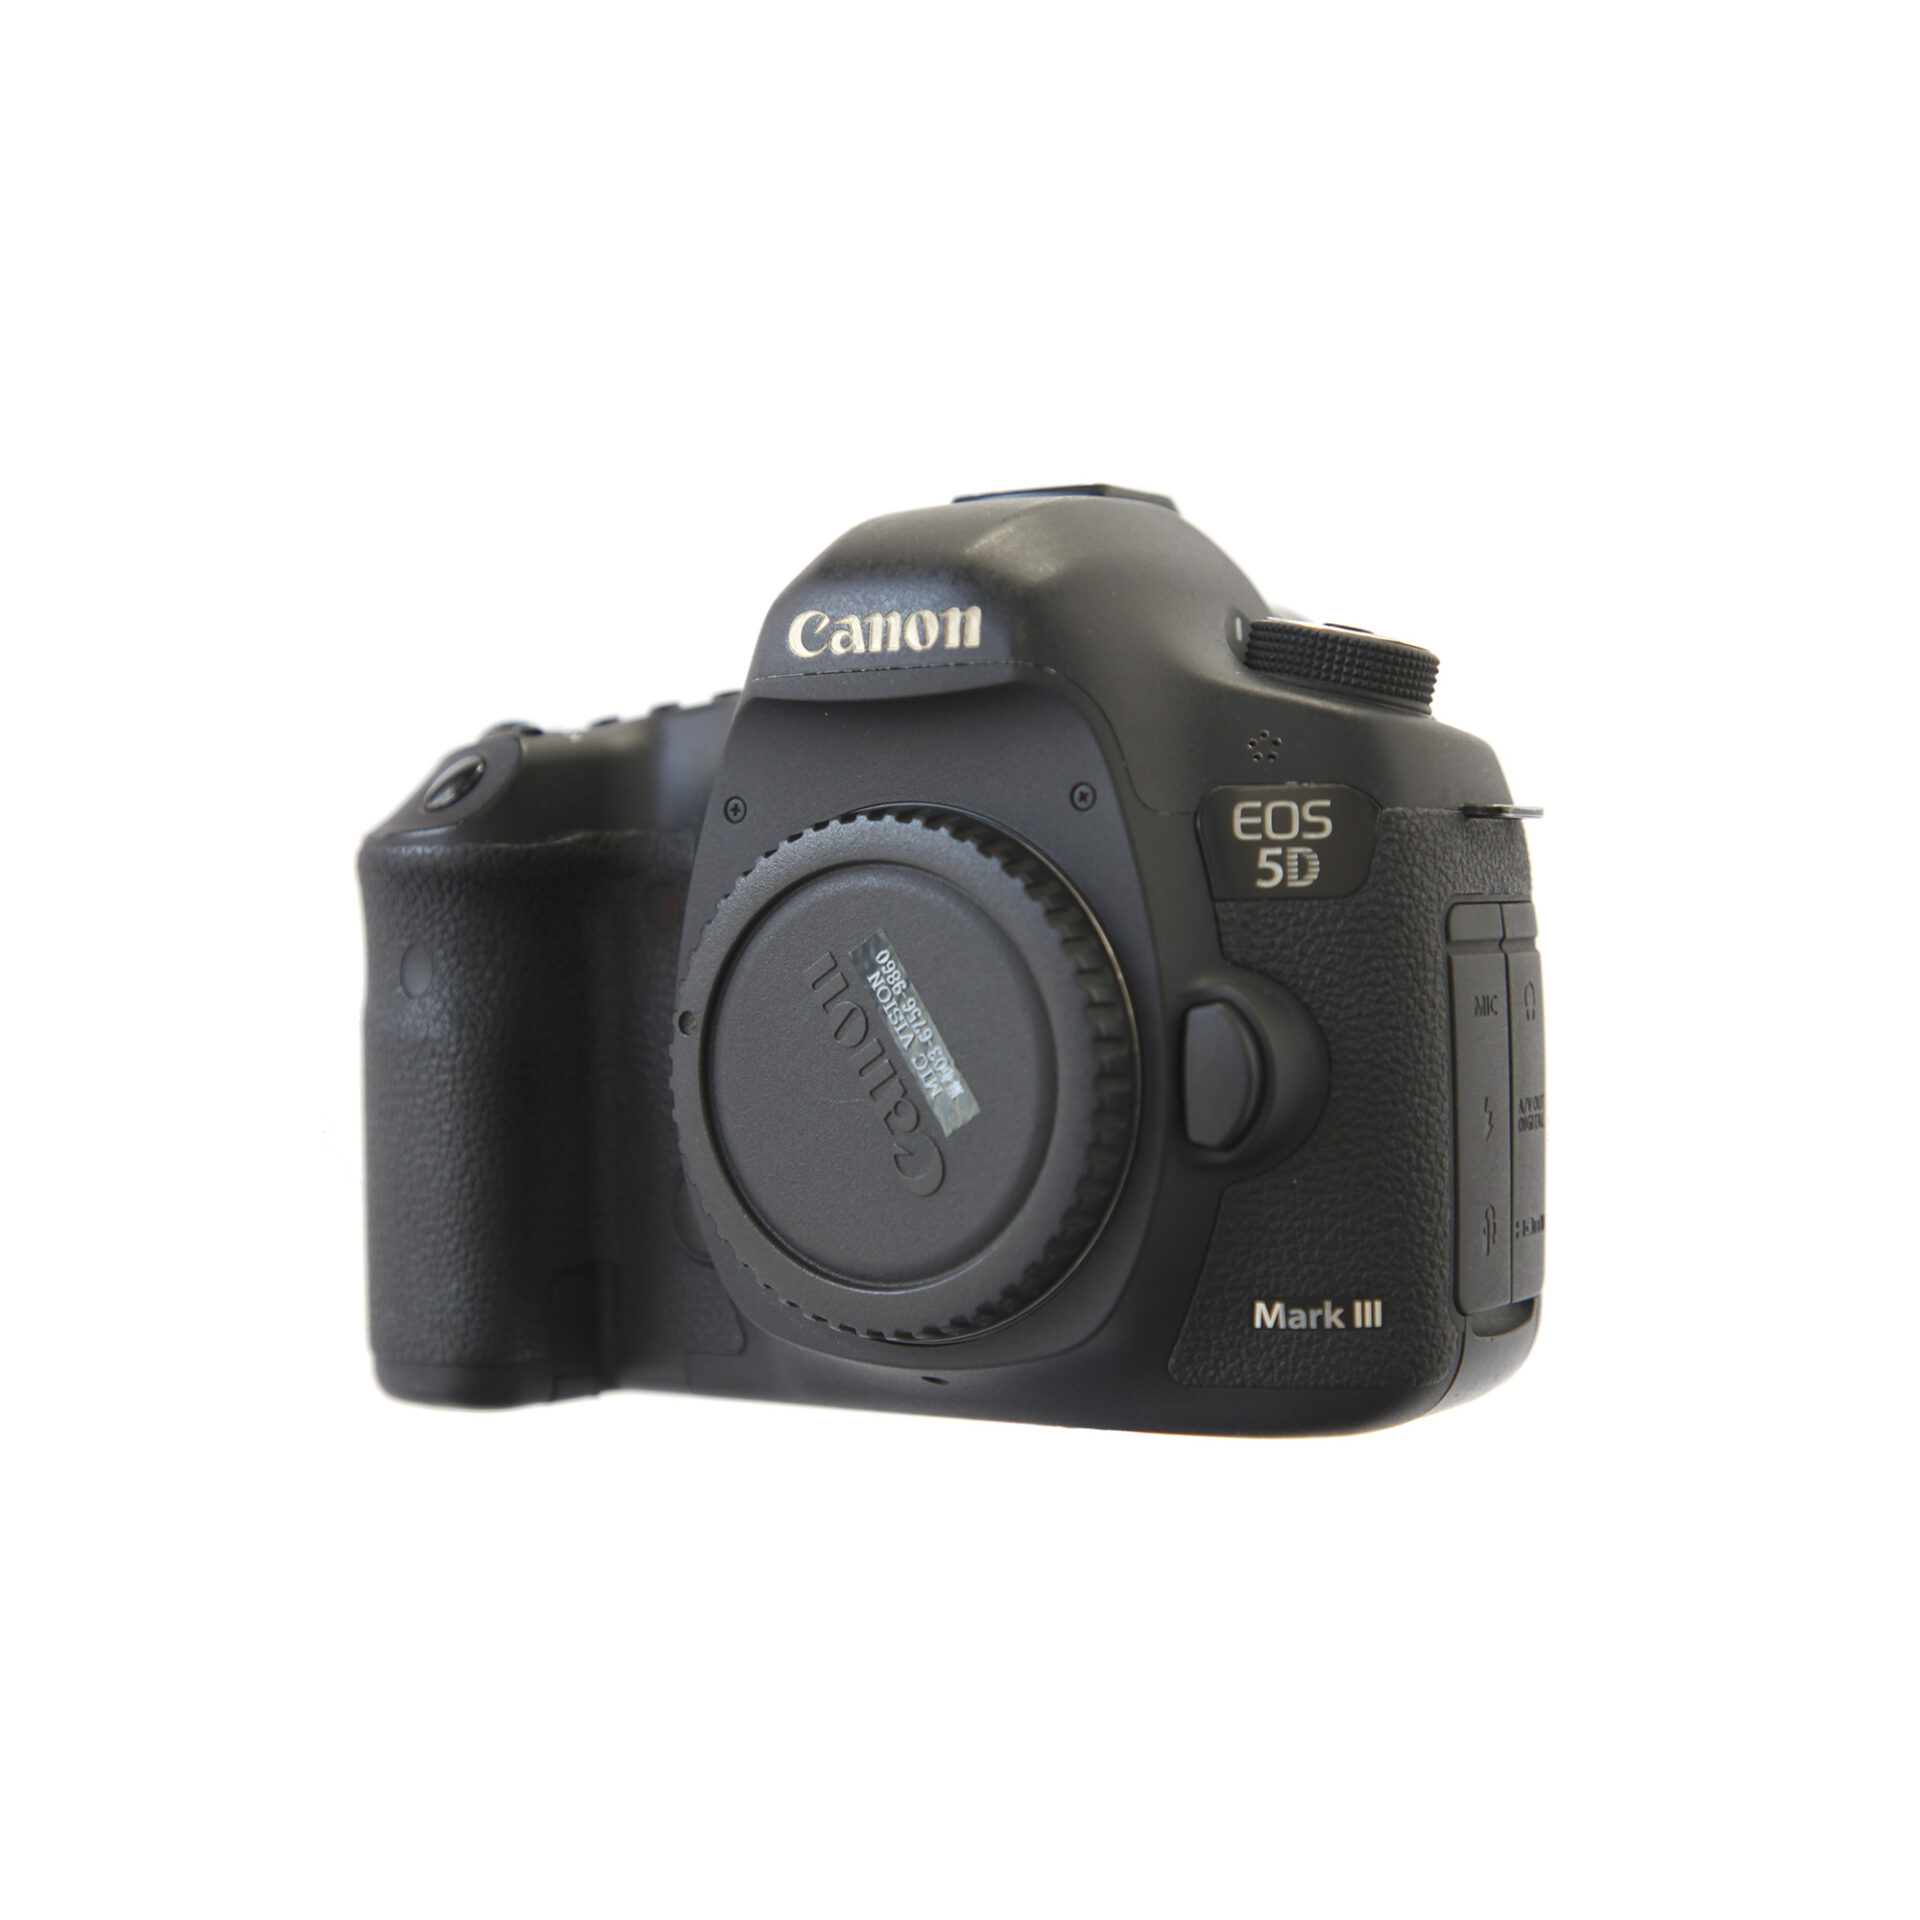 機材レンタル | 業務用・民生カメラ | EOS 5D Mark III | ミックビジョン